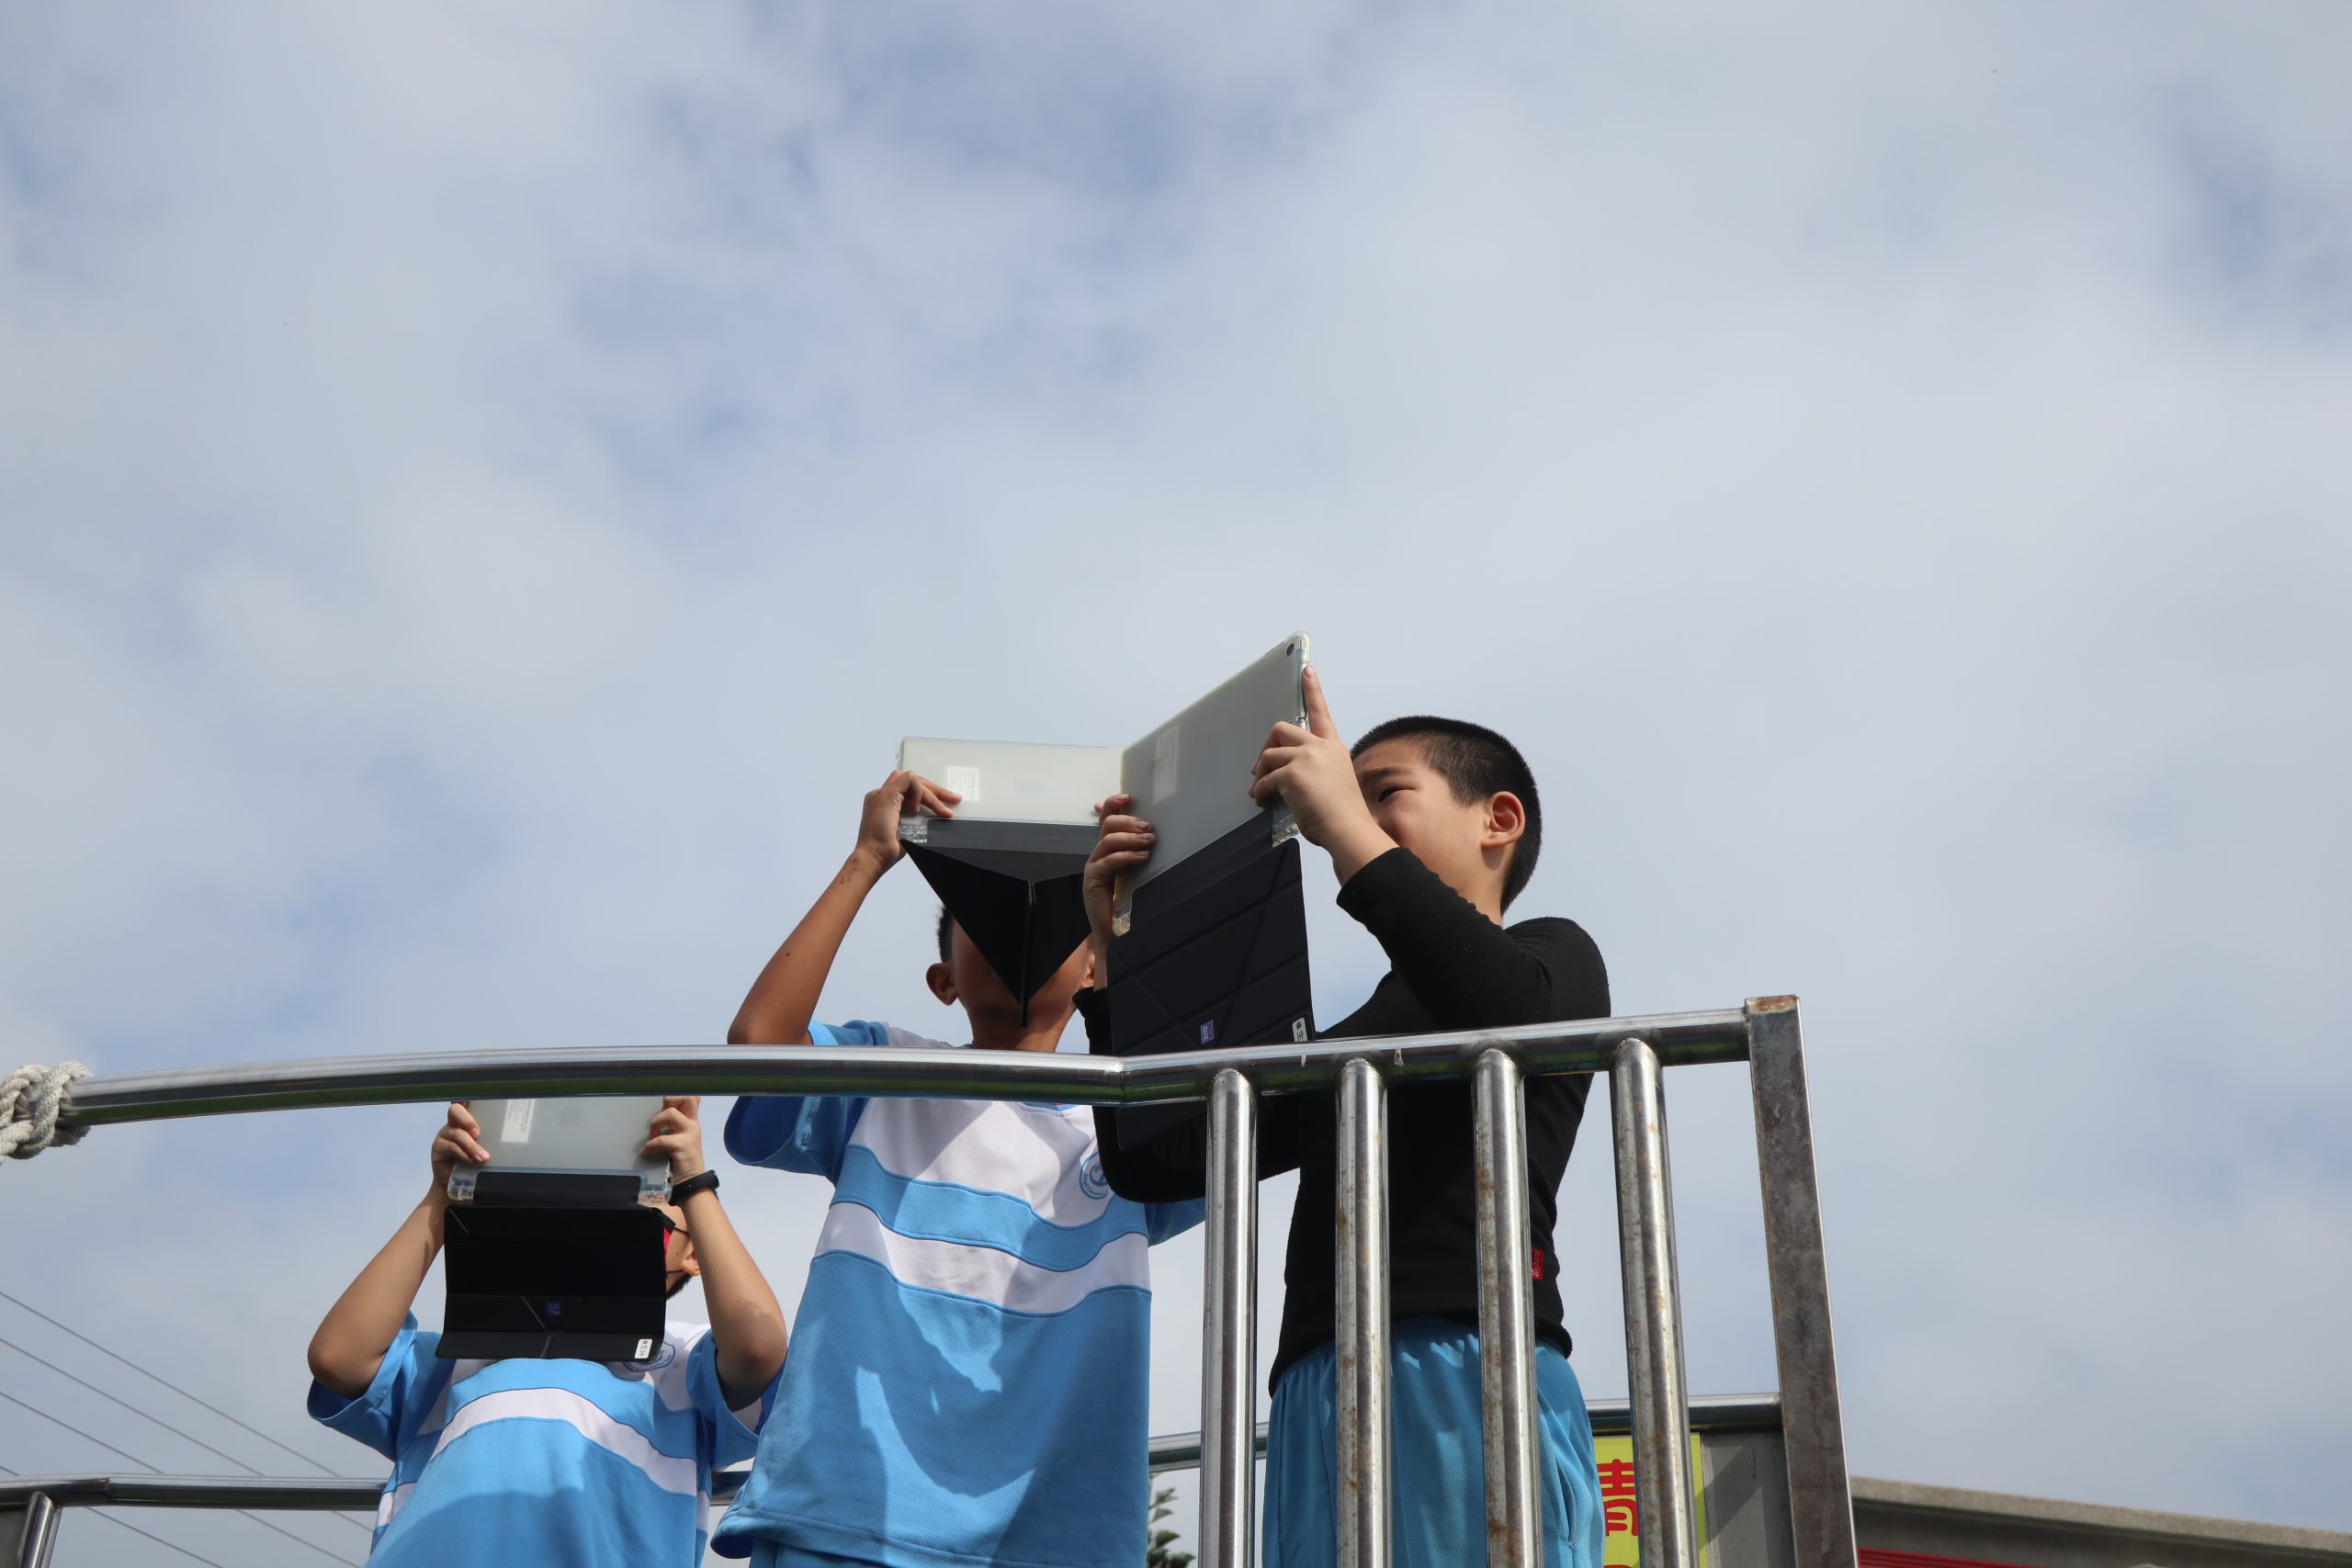 112學年度第一學期於雲林縣麥寮鄉明禮國民小學施辦自拍拼圖課程實作紀錄系列照片共20張